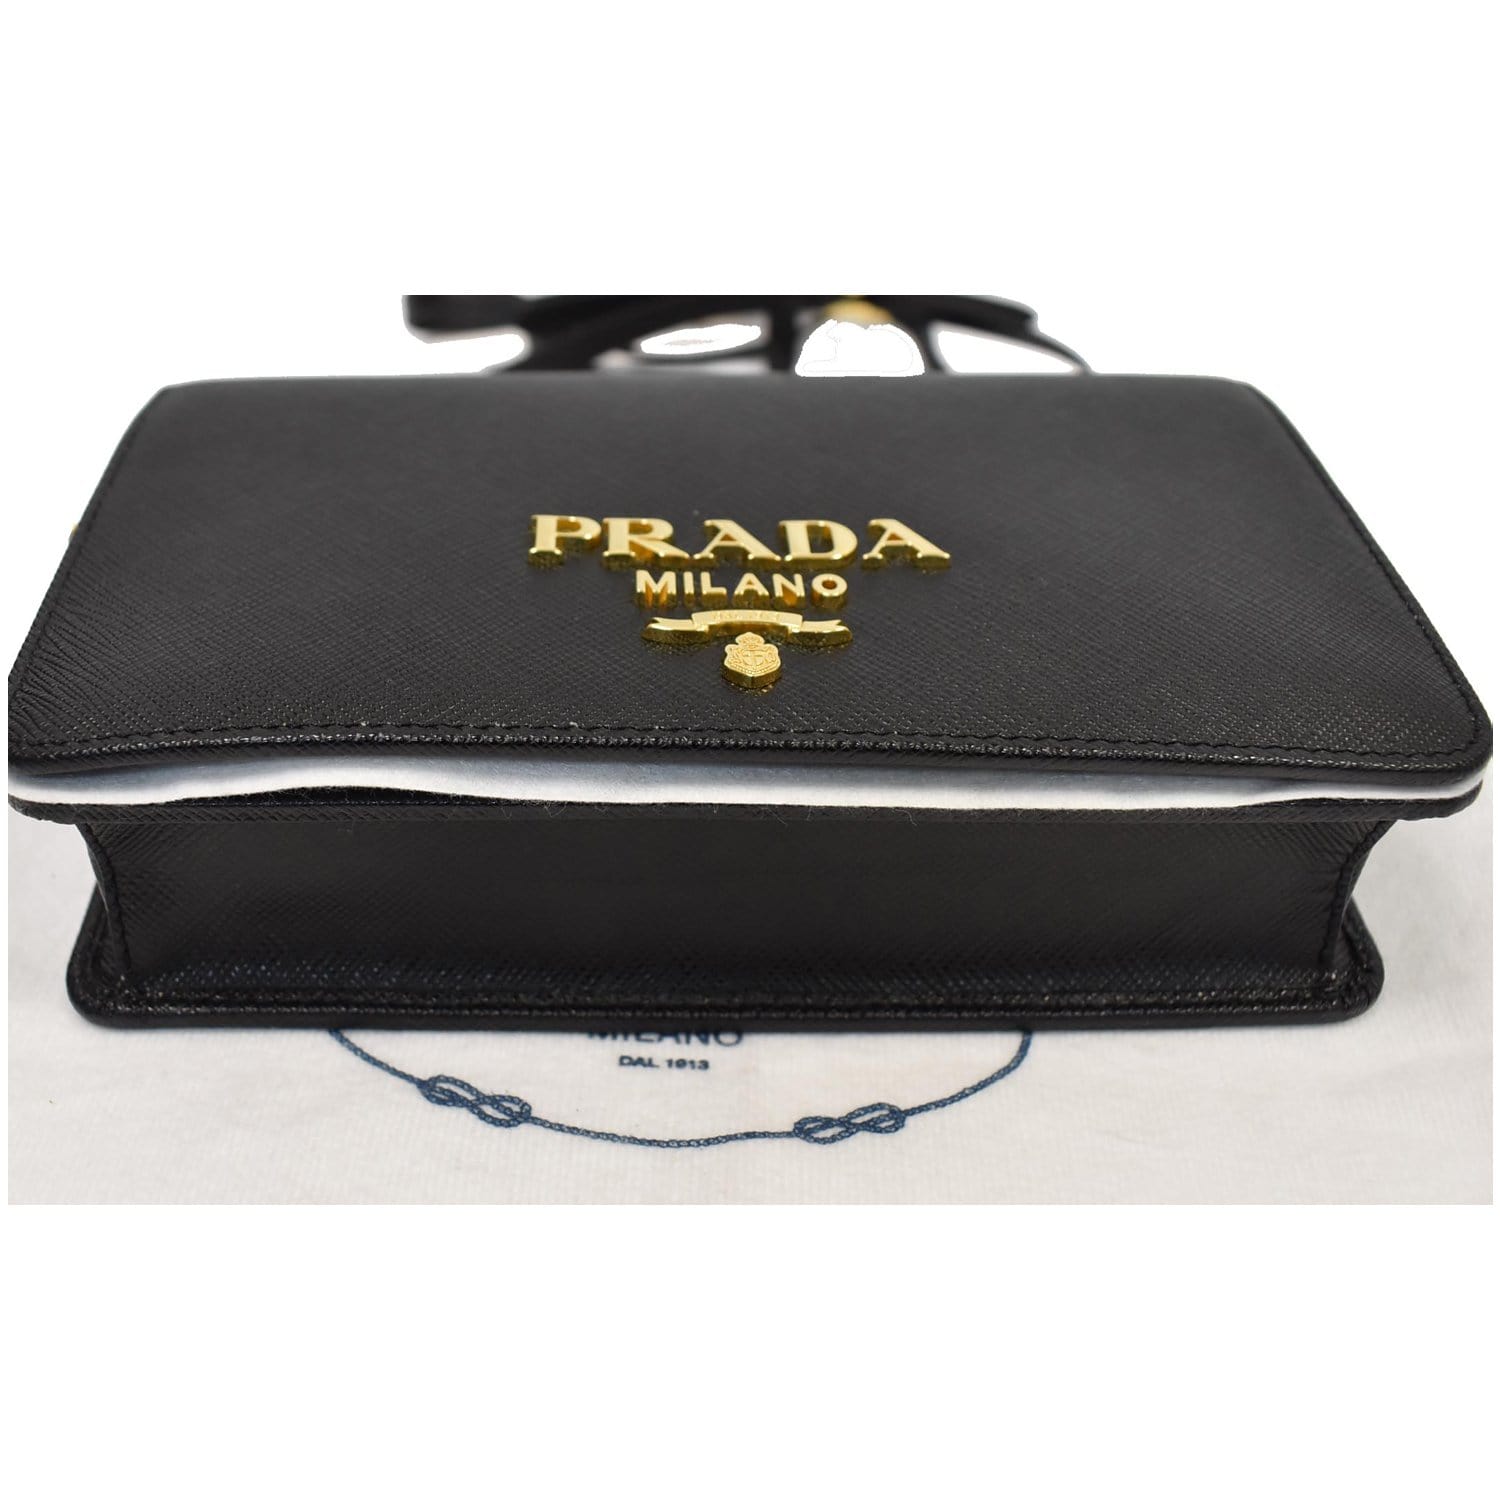 Prada Shoulder Bags for Women - Shop on FARFETCH